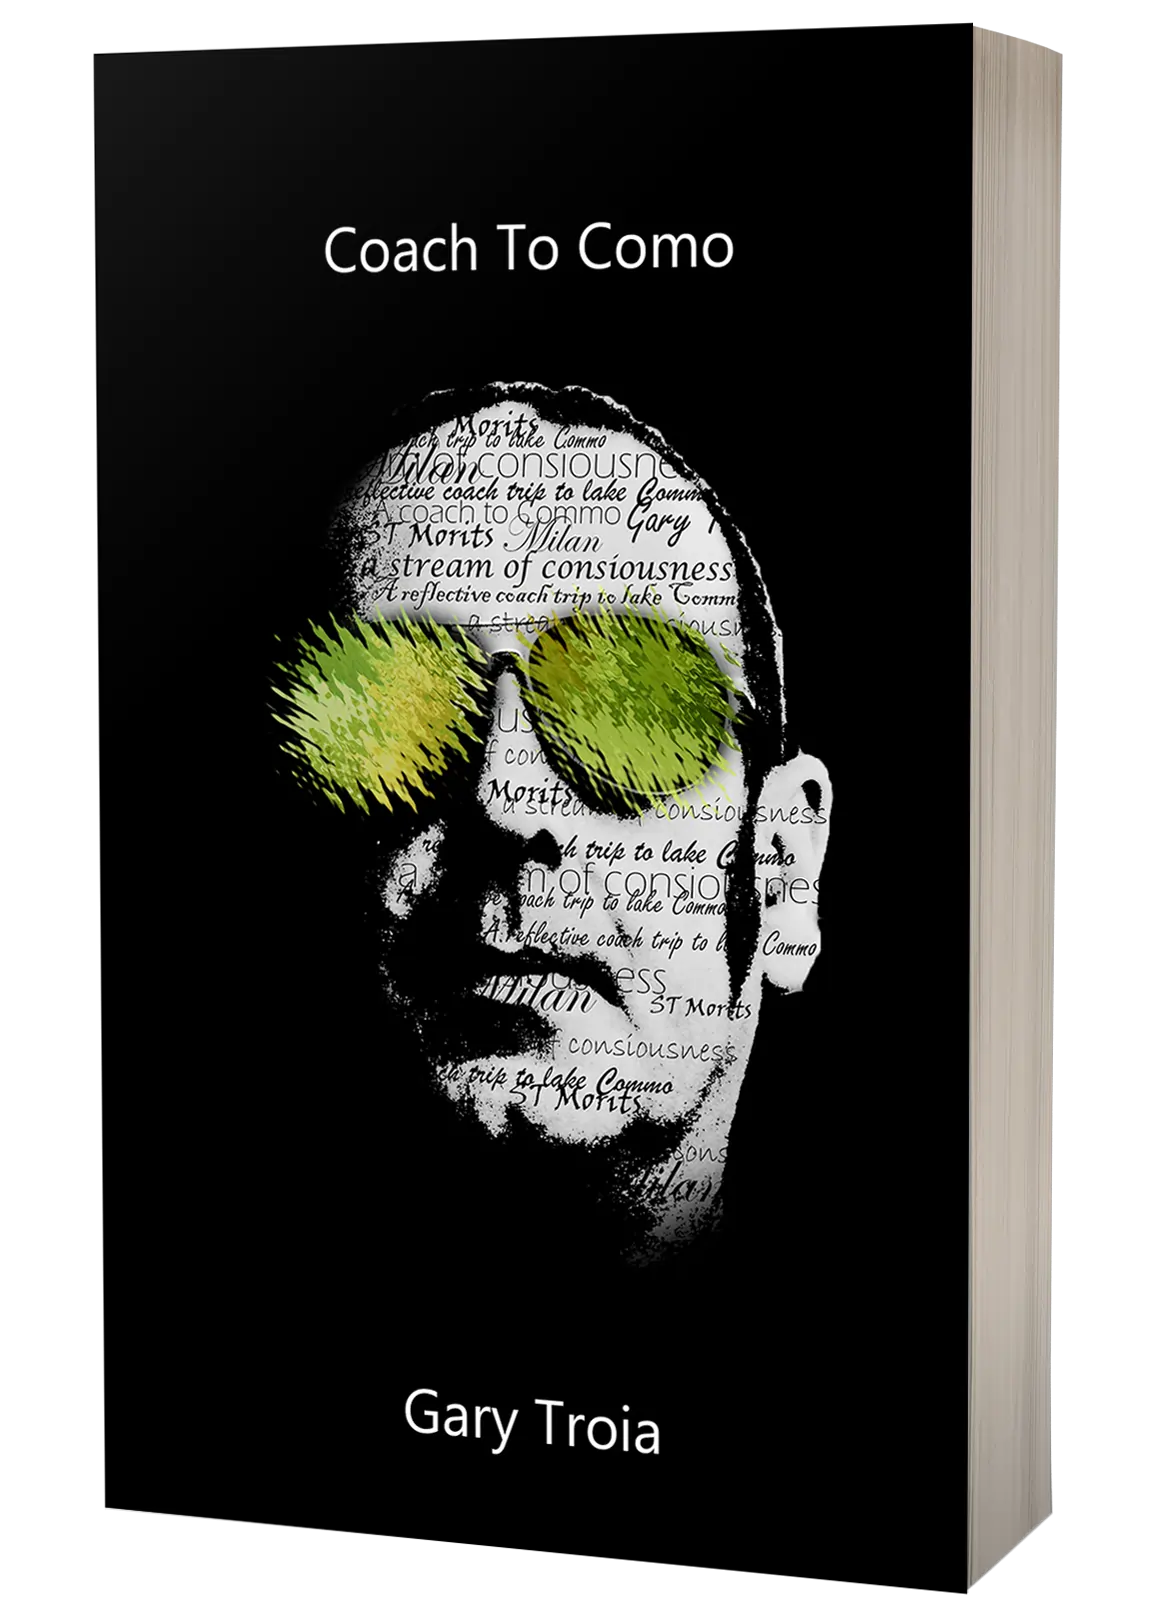 Coach to Como: A Reflective Coach Trip to Lake Como, St Moritz and Milan